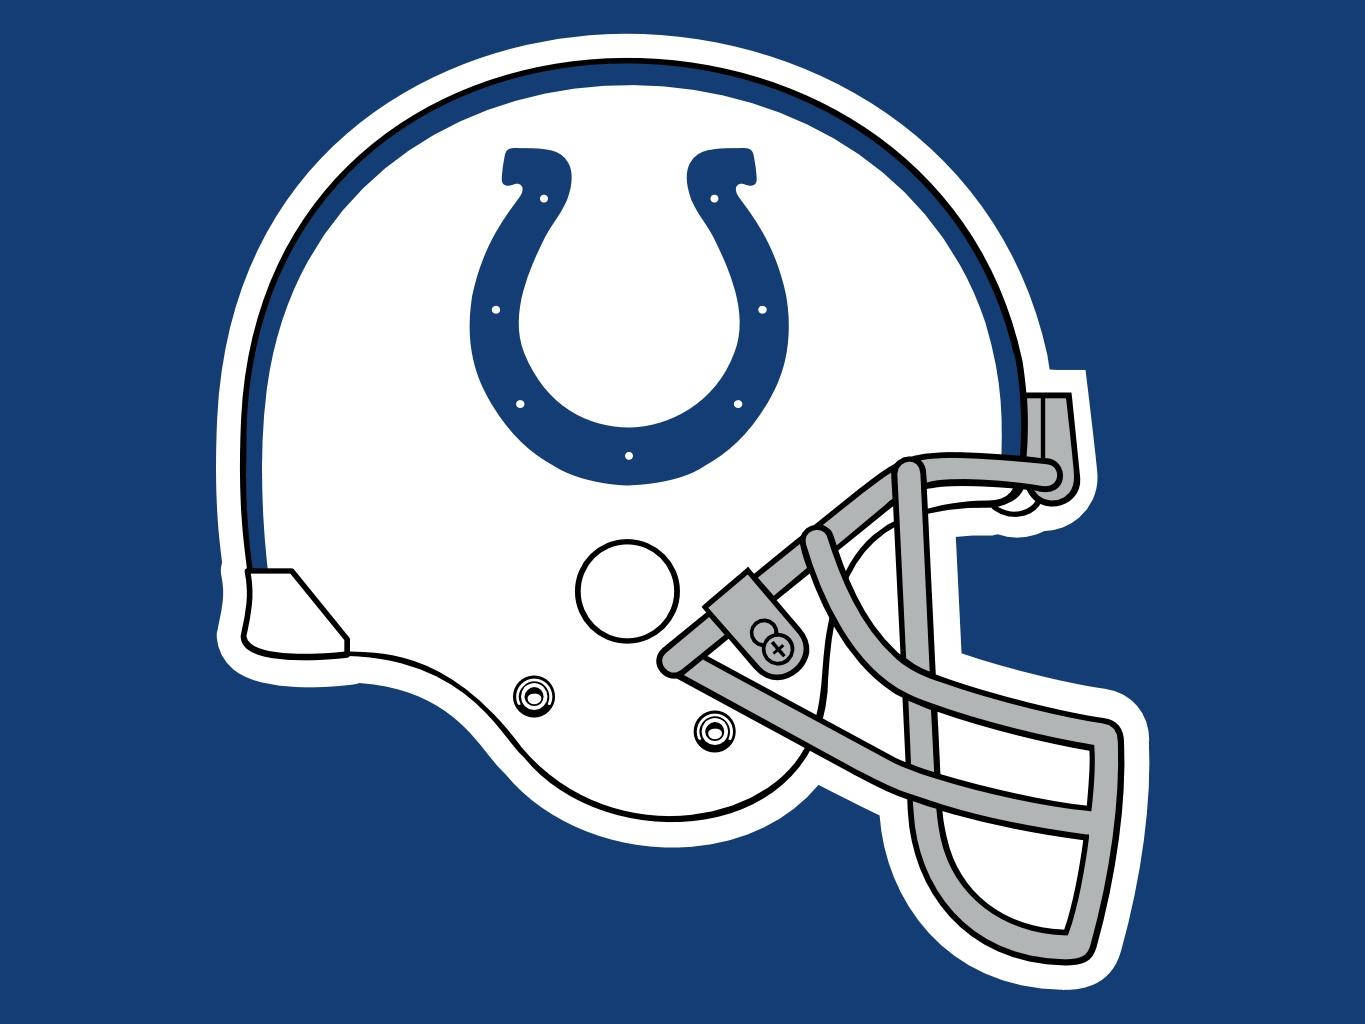 NFL Indianapolis Colts Football Helmet Wallpaper